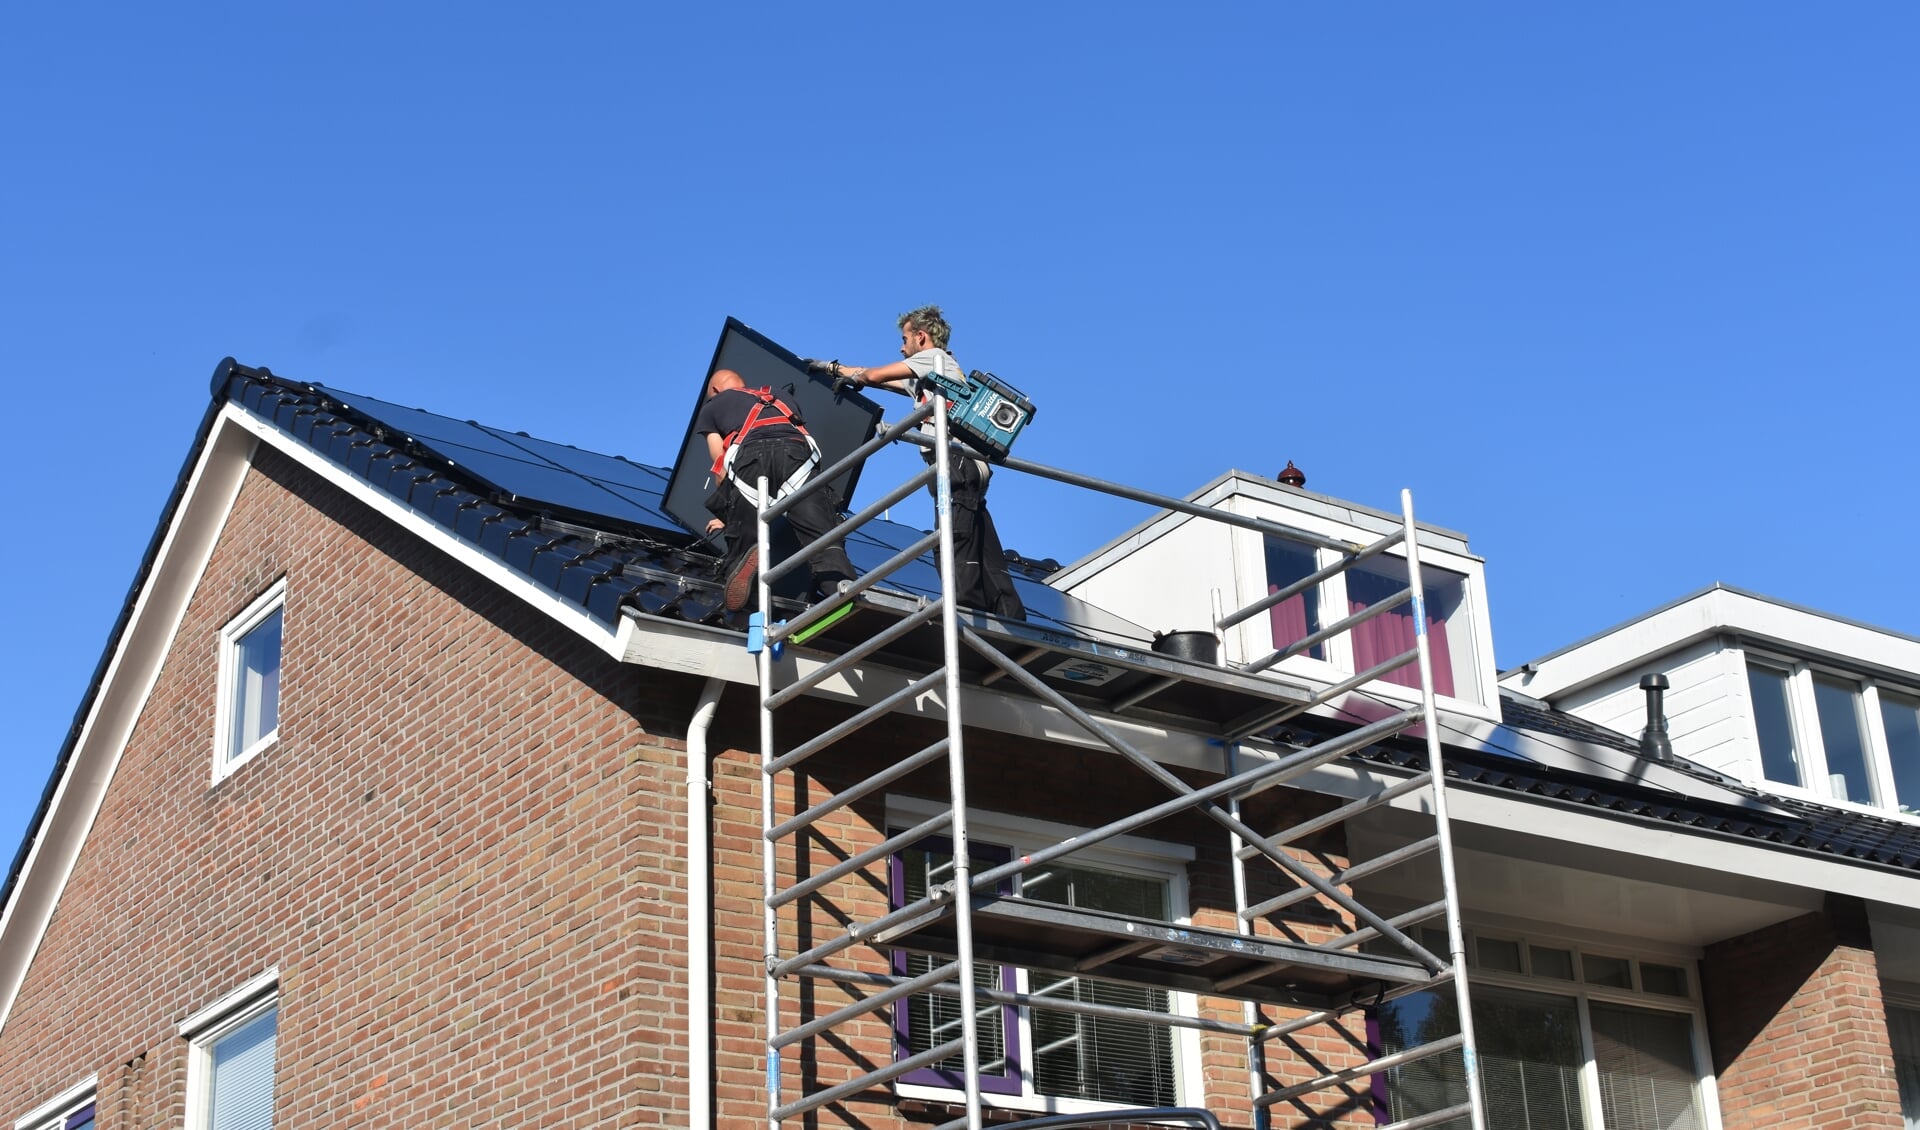 Medewerkers van Solar-Systemen.nl in Drachten leggen twintig zonnepanelen op het dak van een woning aan de Gauke Boelensstraat in Drachten.